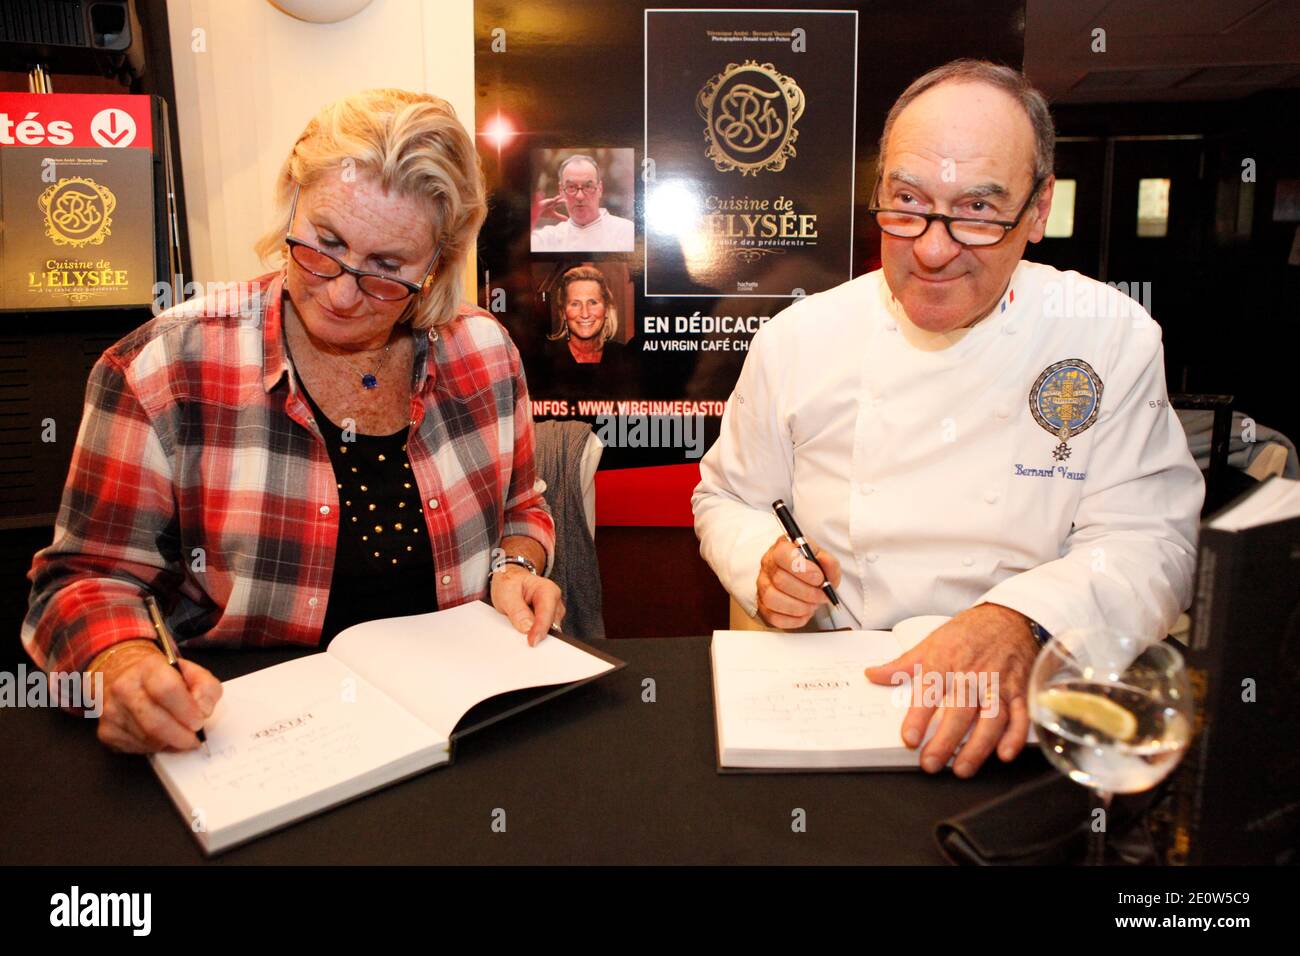 Le critique de restaurant Veronique André et le chef de l'Elysée Bernard  Vaussion signent des copies de leur livre « cuisine de l'Elysée - A la table  des présidents » au Virgin